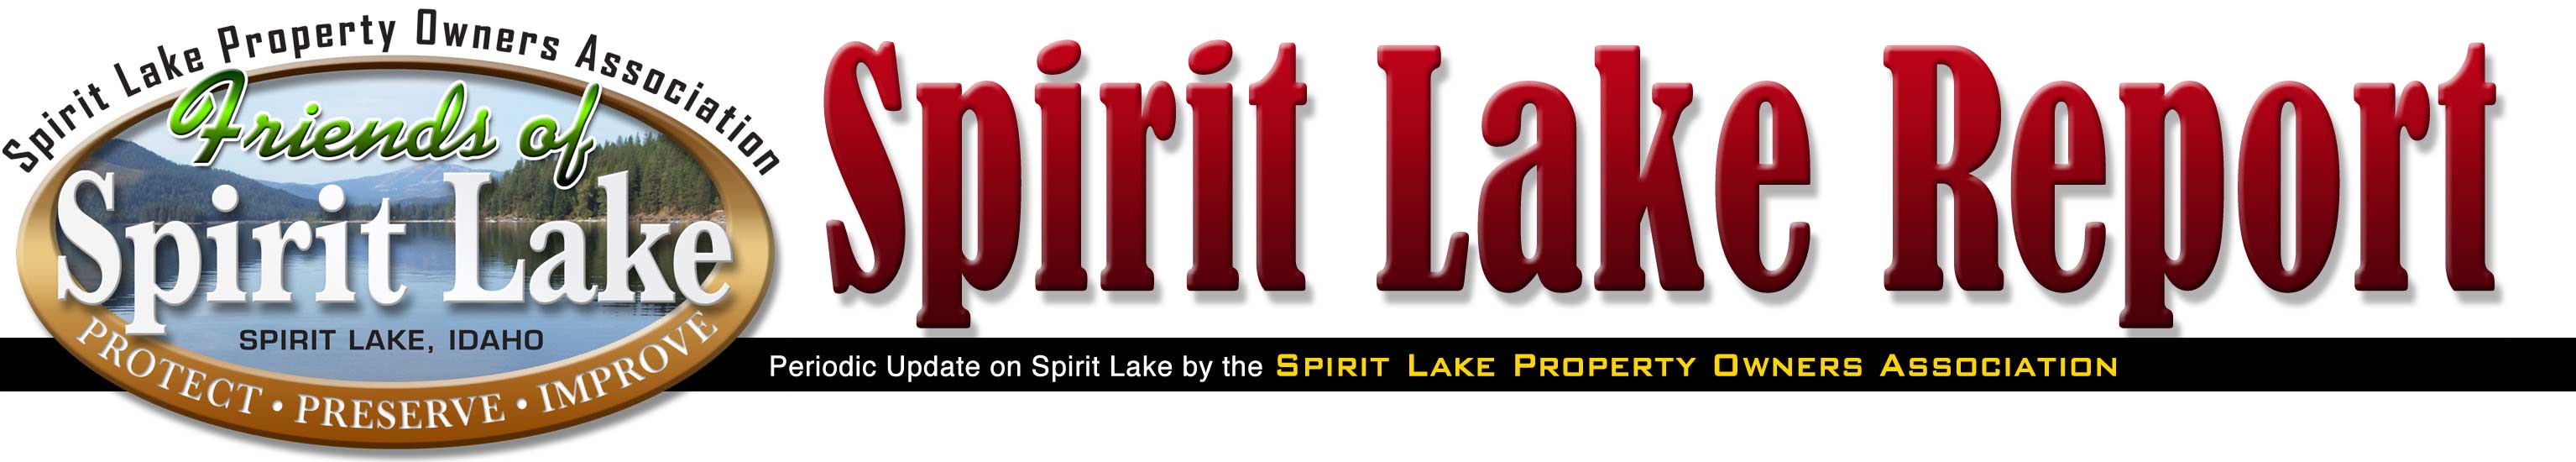 spirit lake report newsletter